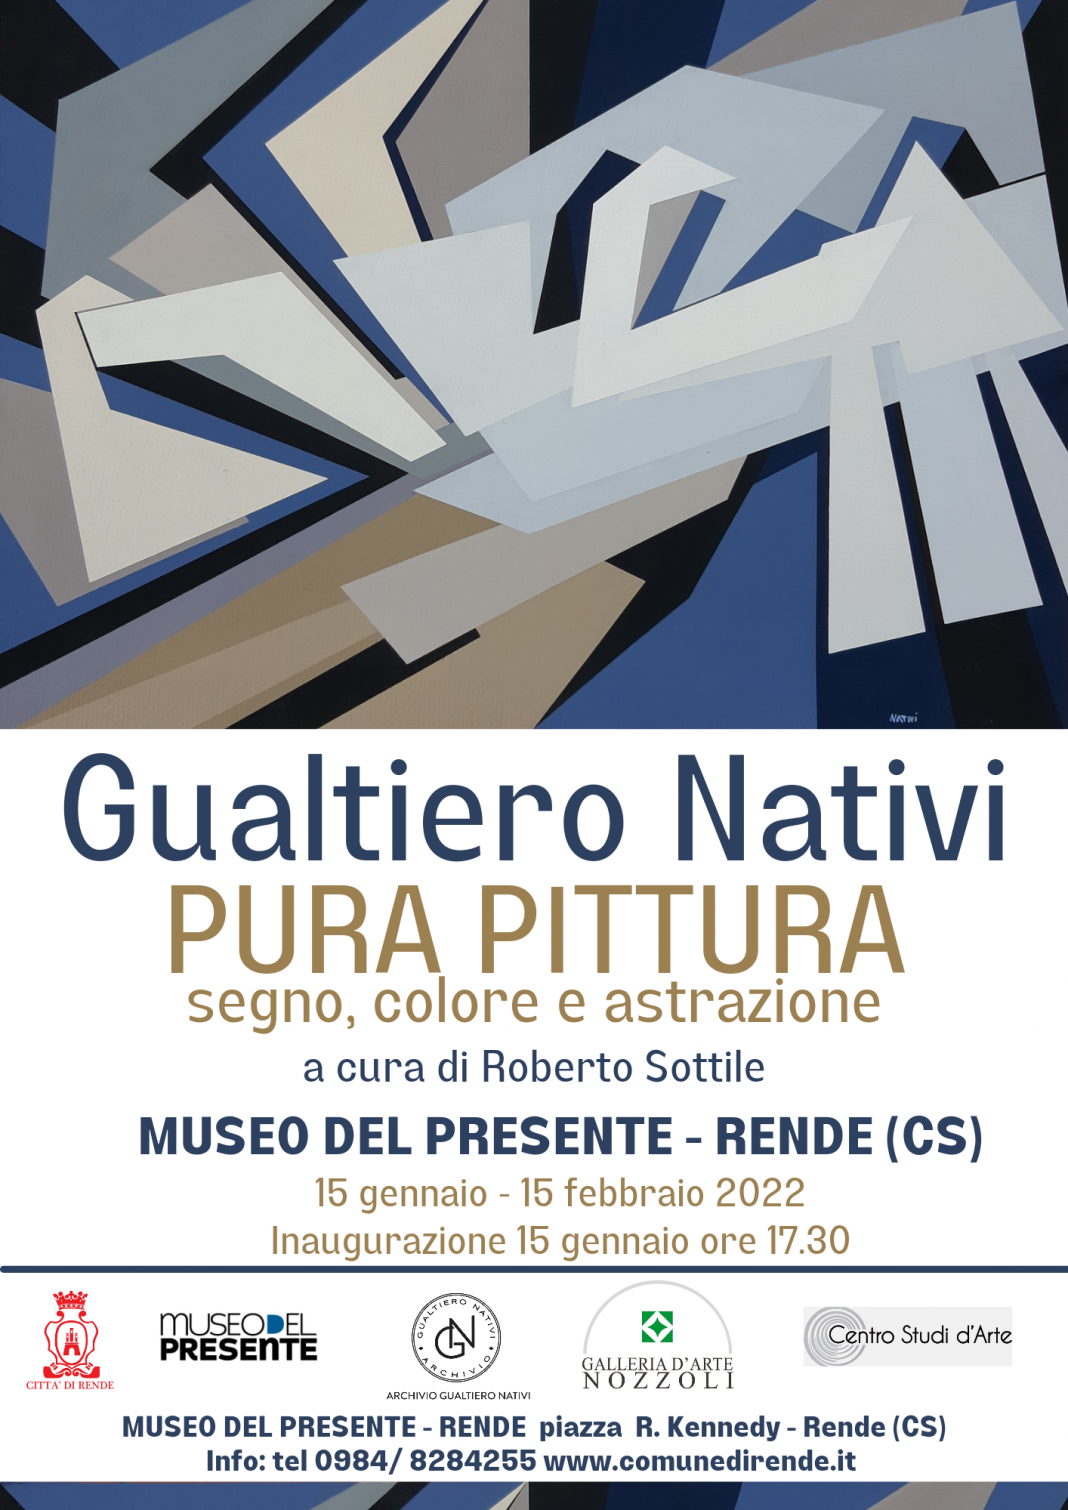 Gualtiero Nativi – Pura Pittura. segno, colore e astrazionehttps://www.exibart.com/repository/media/formidable/11/img/59f/locandina-invito-e-fb-1068x1510.png